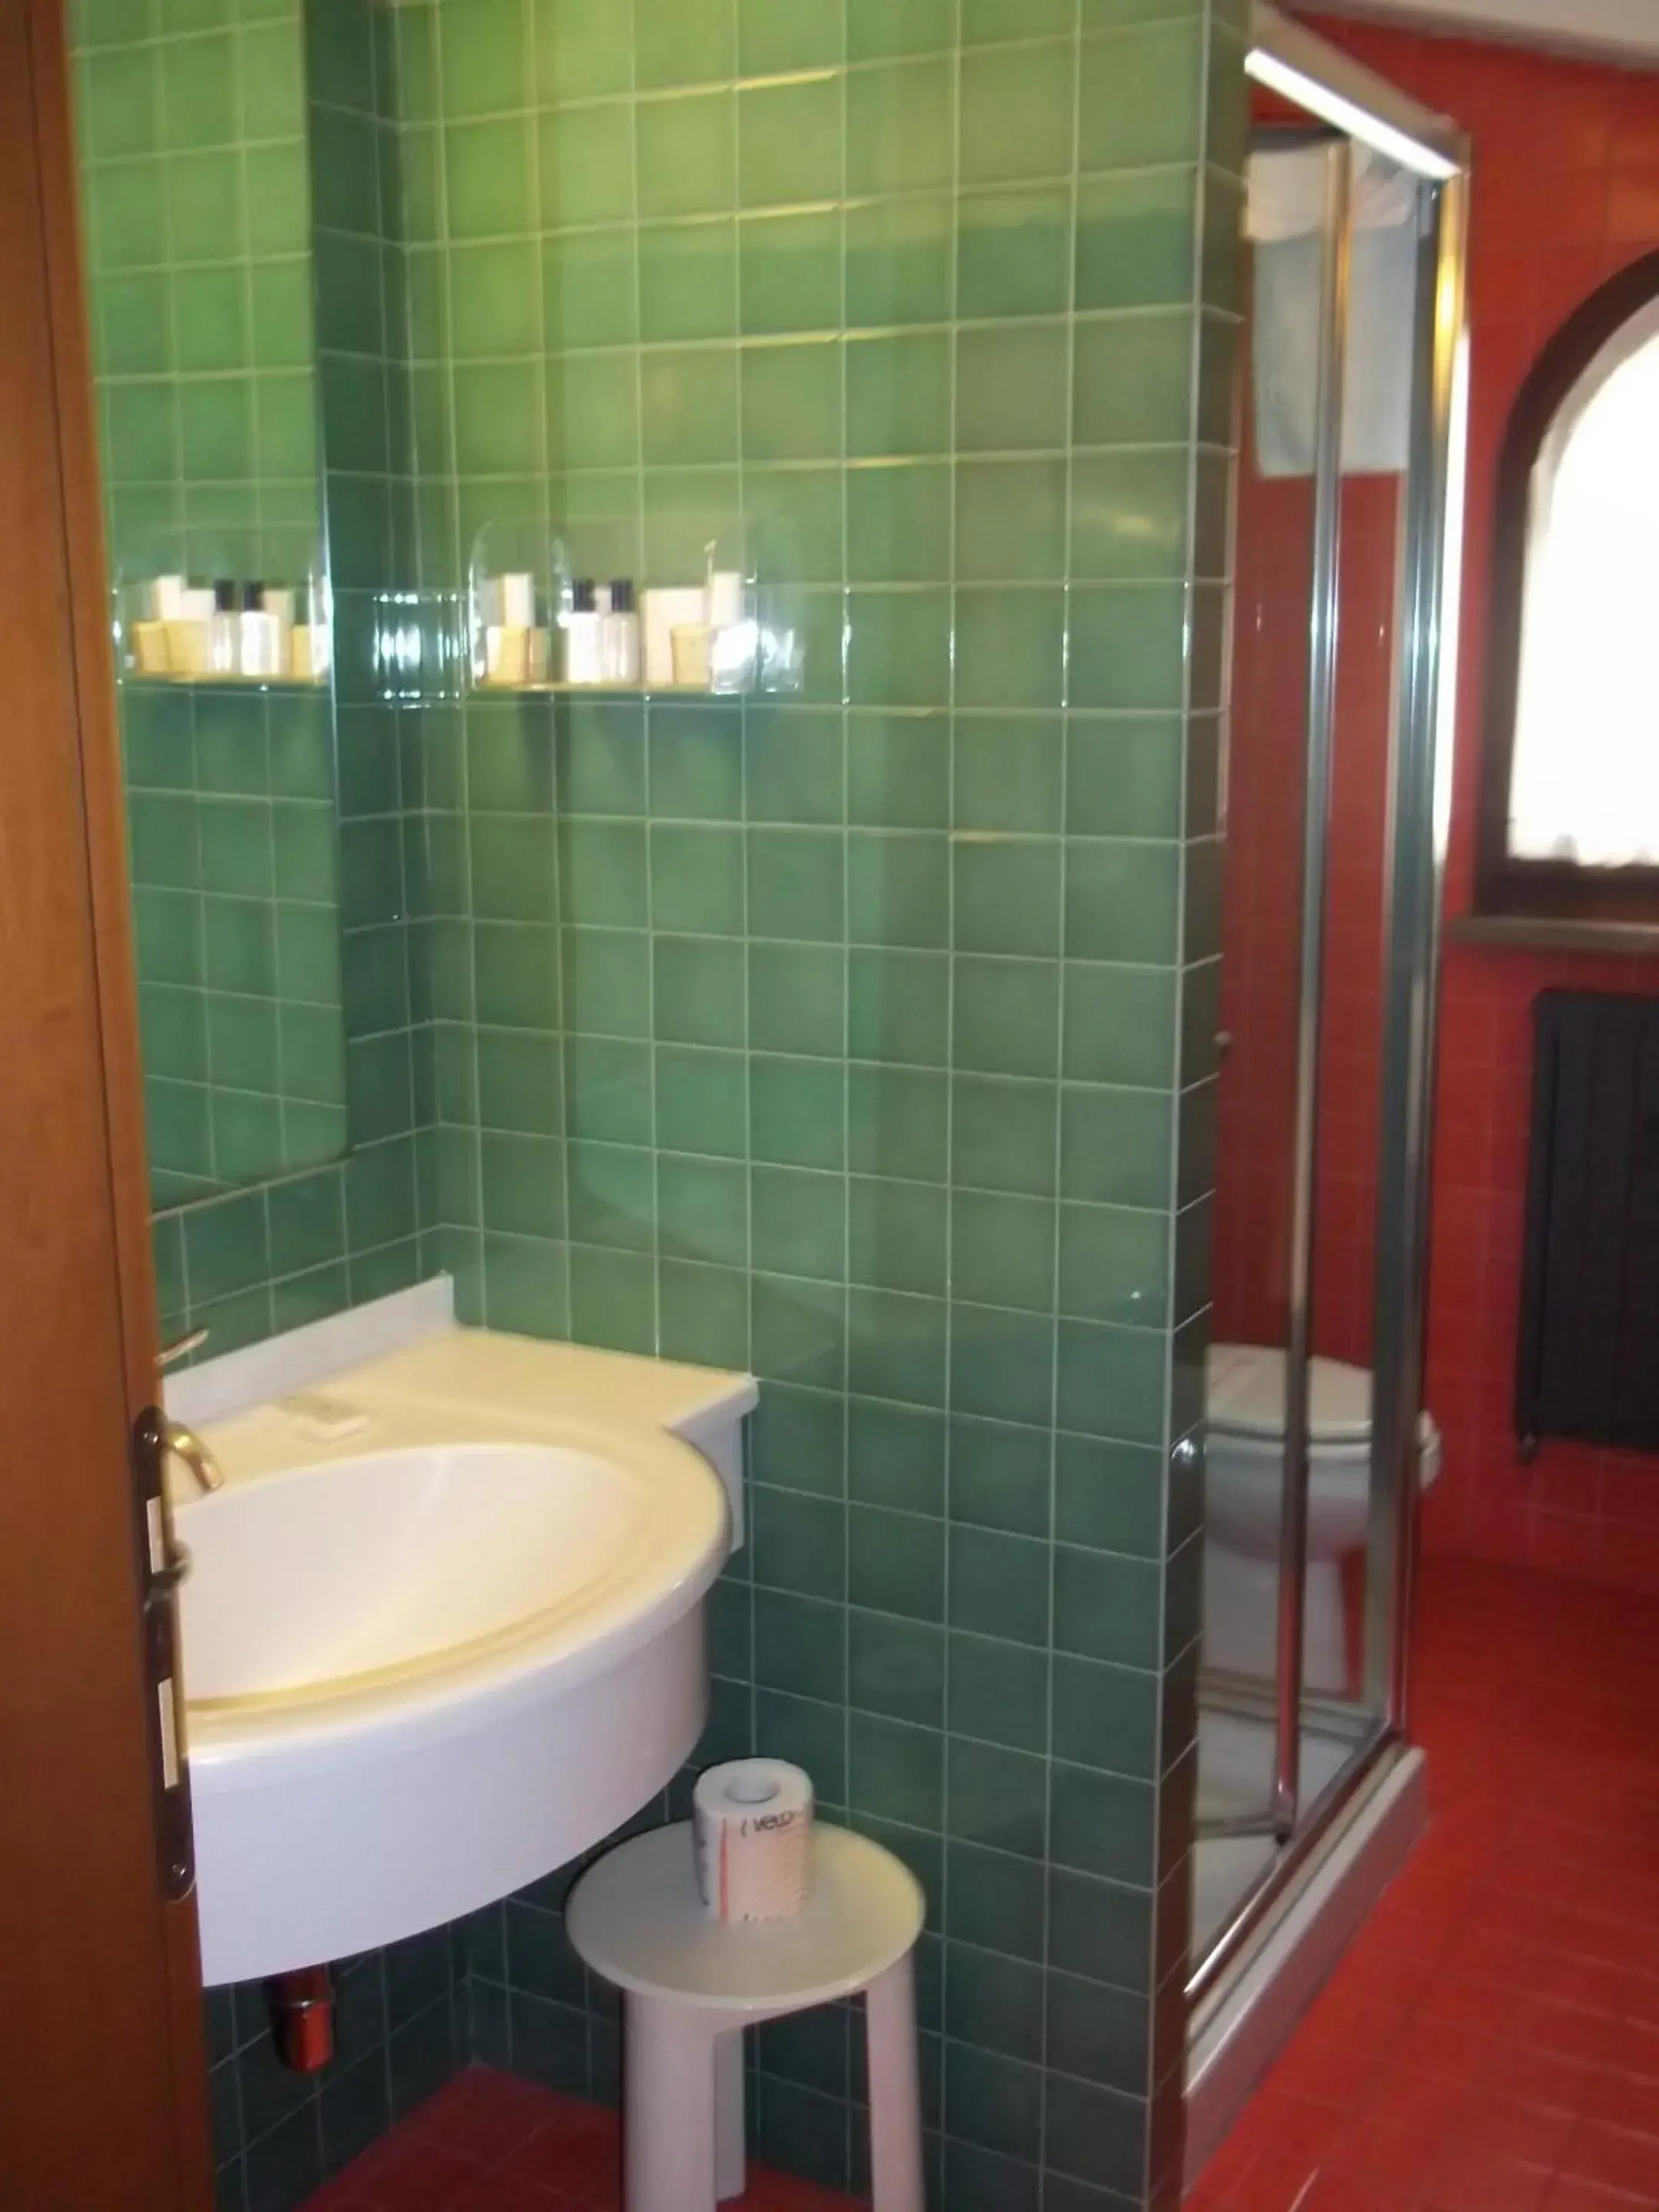 Bathroom in Hotel Cristoforo Colombo